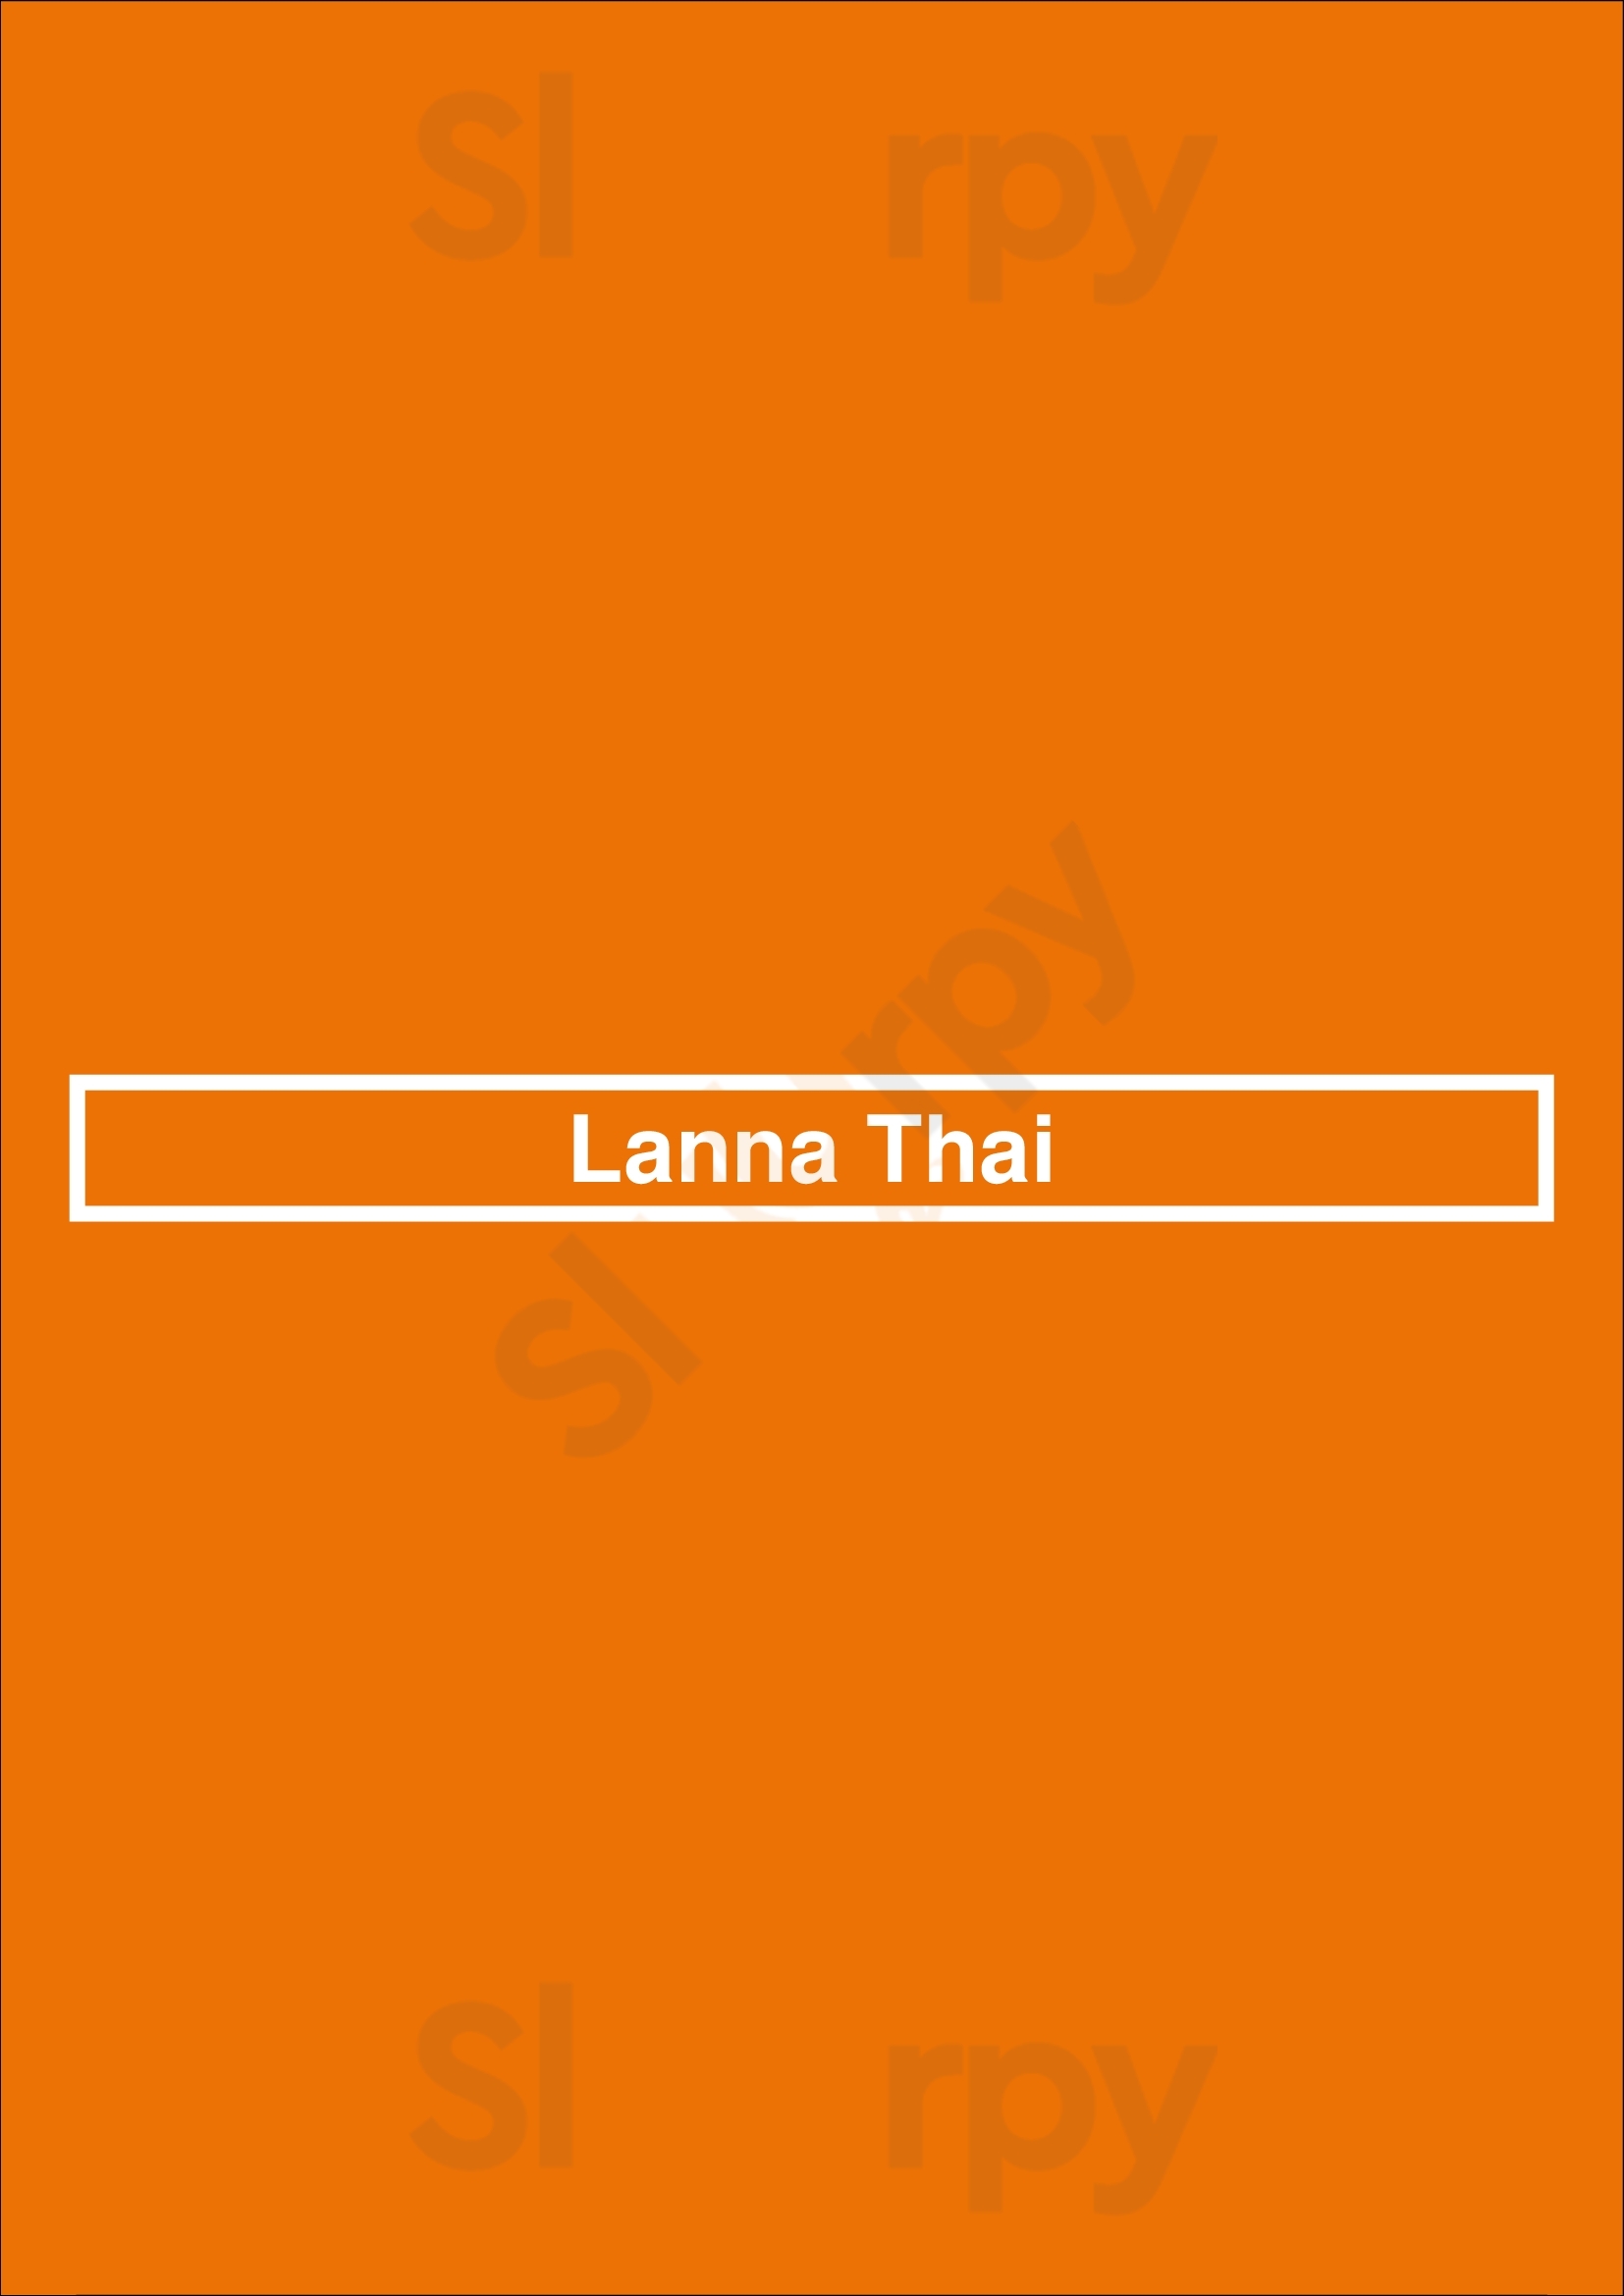 Lanna Thai San Jose Menu - 1